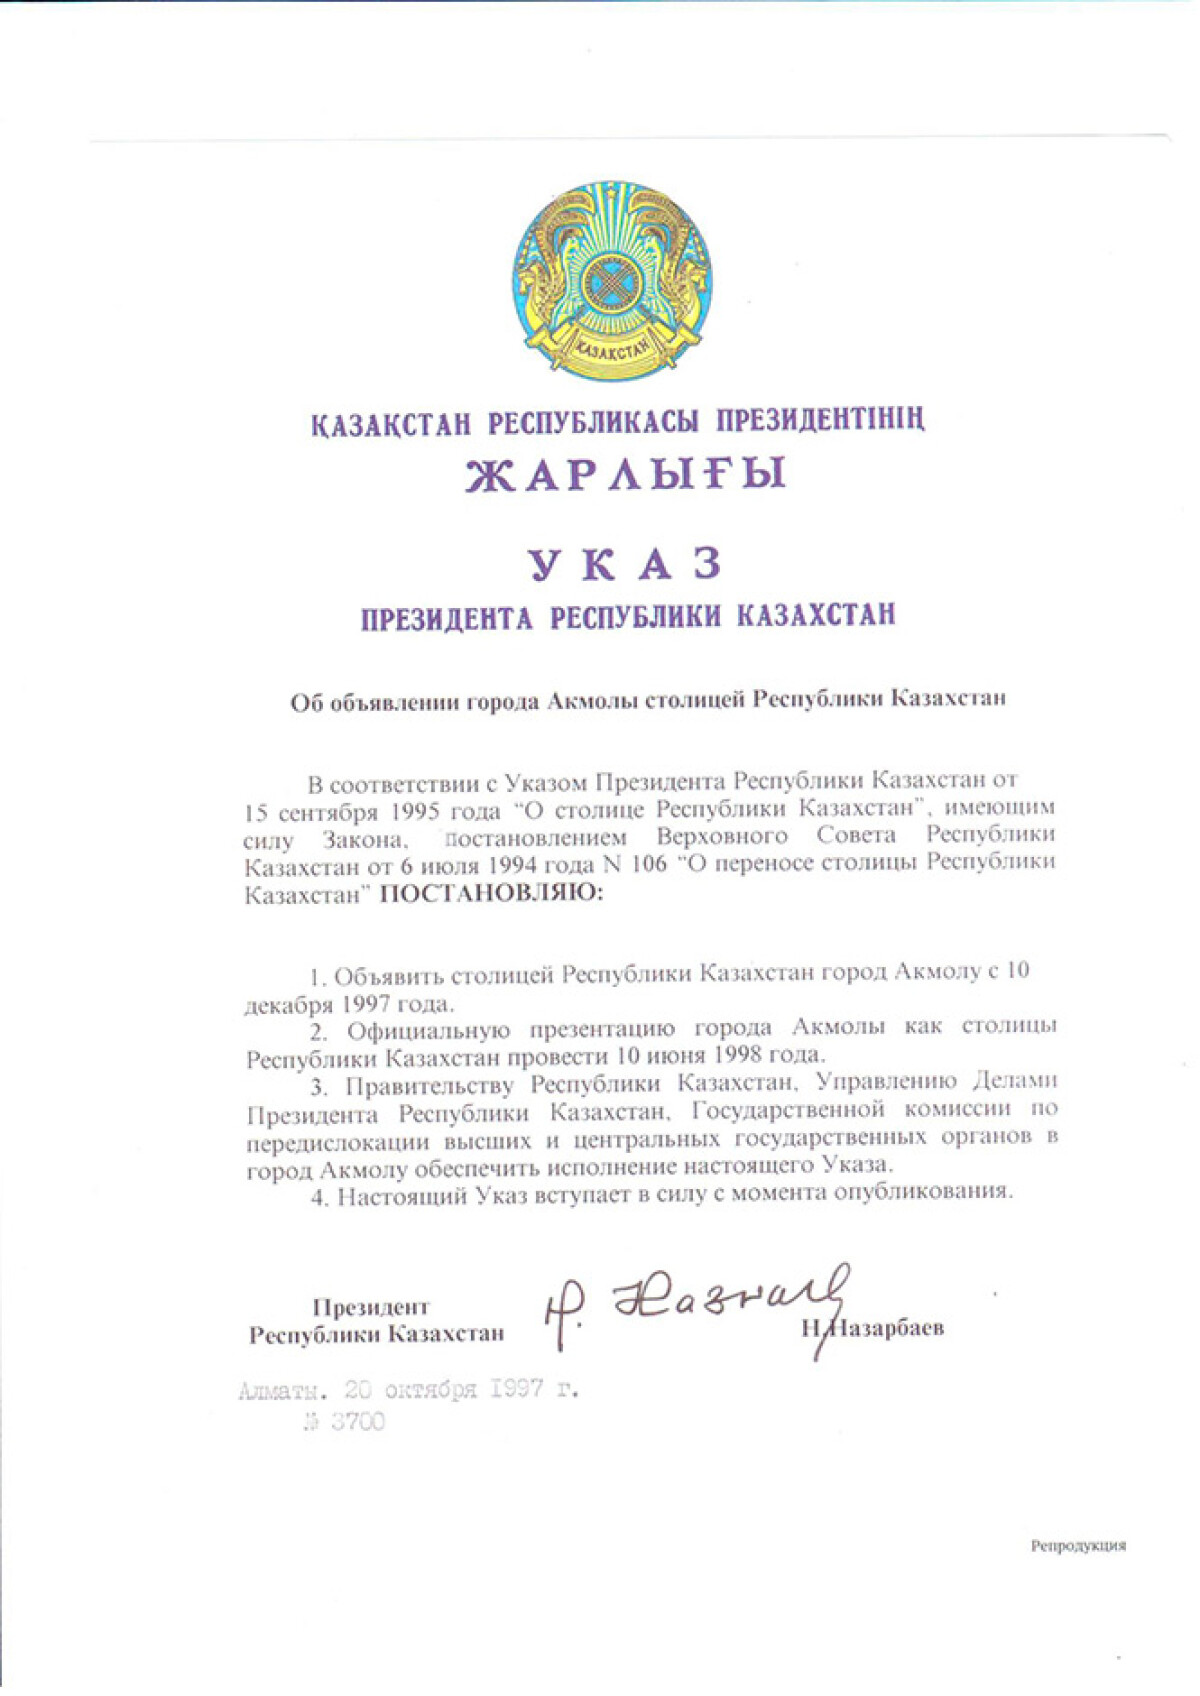 Указ Президента Республики Казахстан об объявлении Акмолы столицы Казахстана от 20 октября 1997 года - e-history.kz